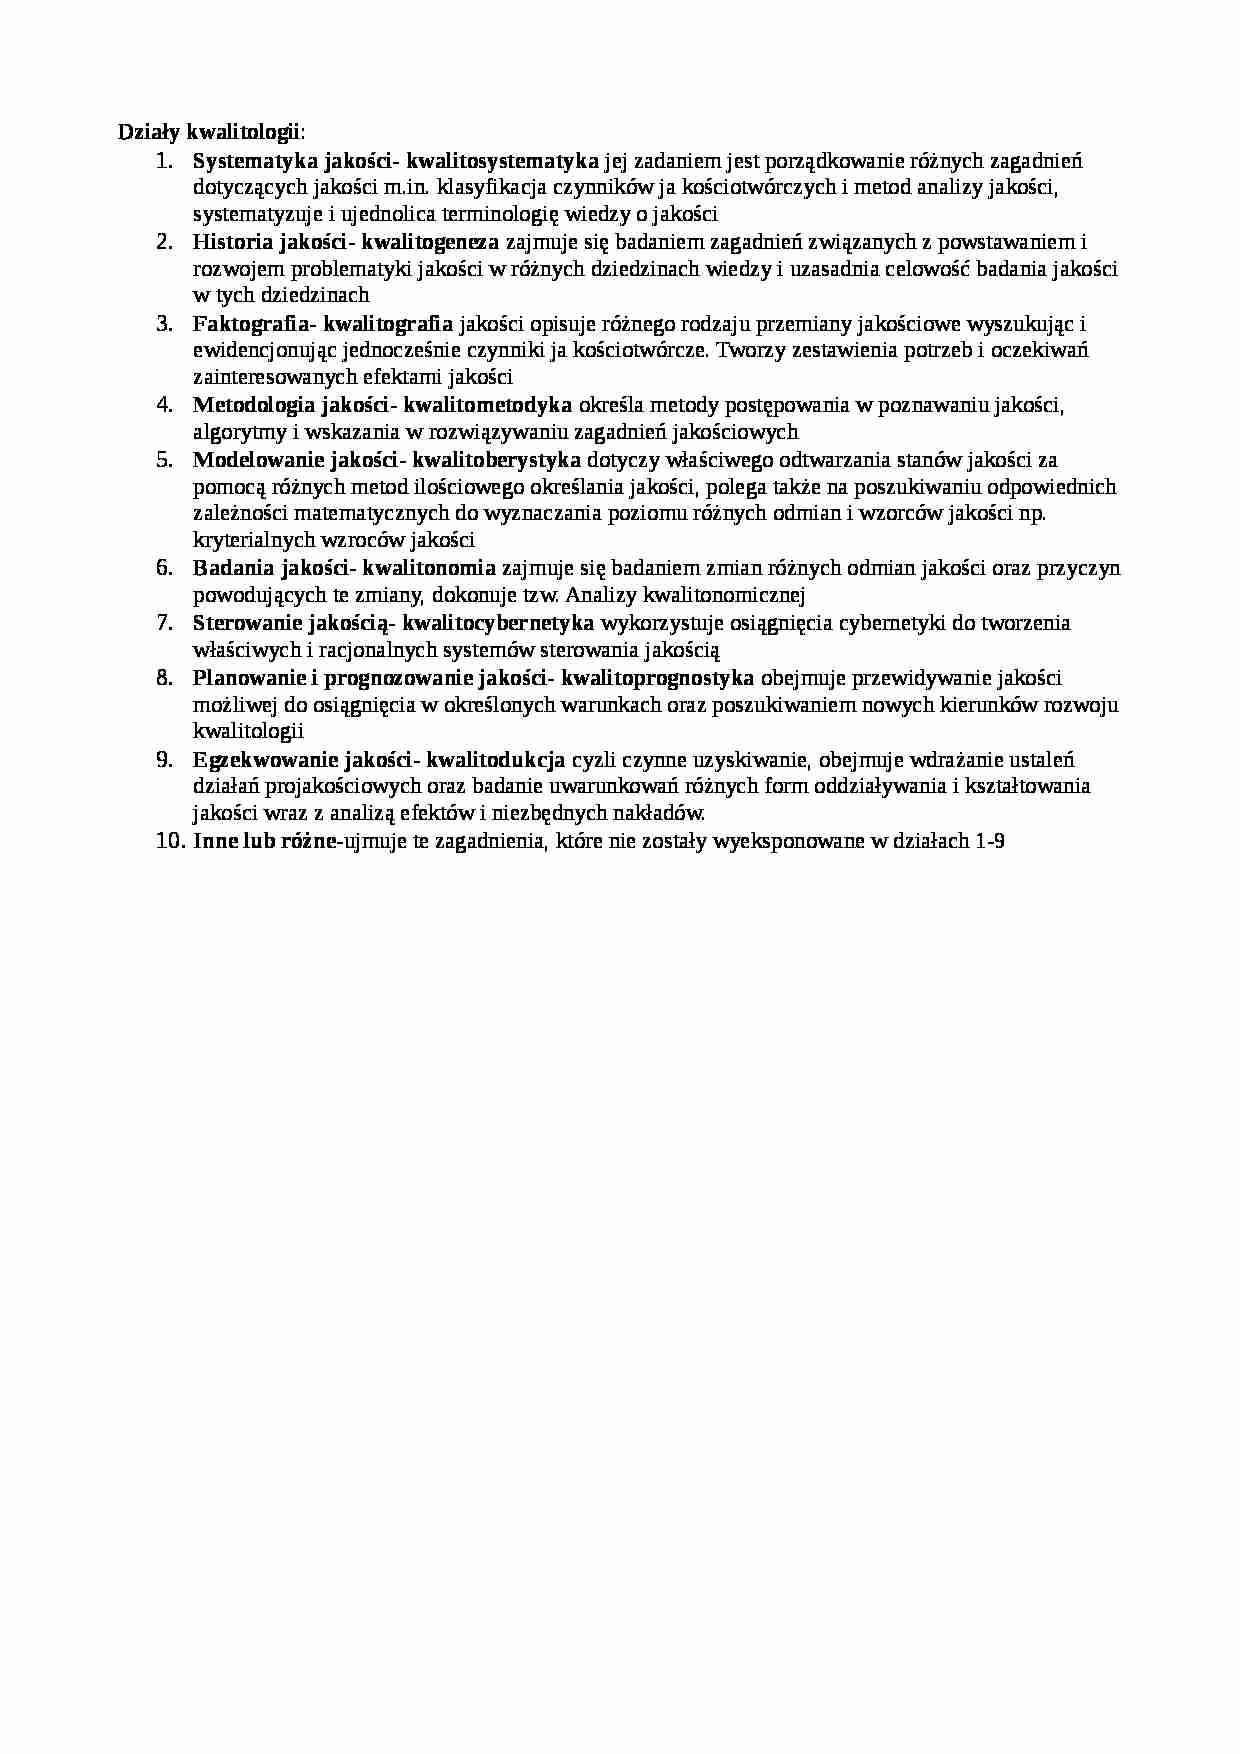 Działy kwalitologii-opracowanie - strona 1